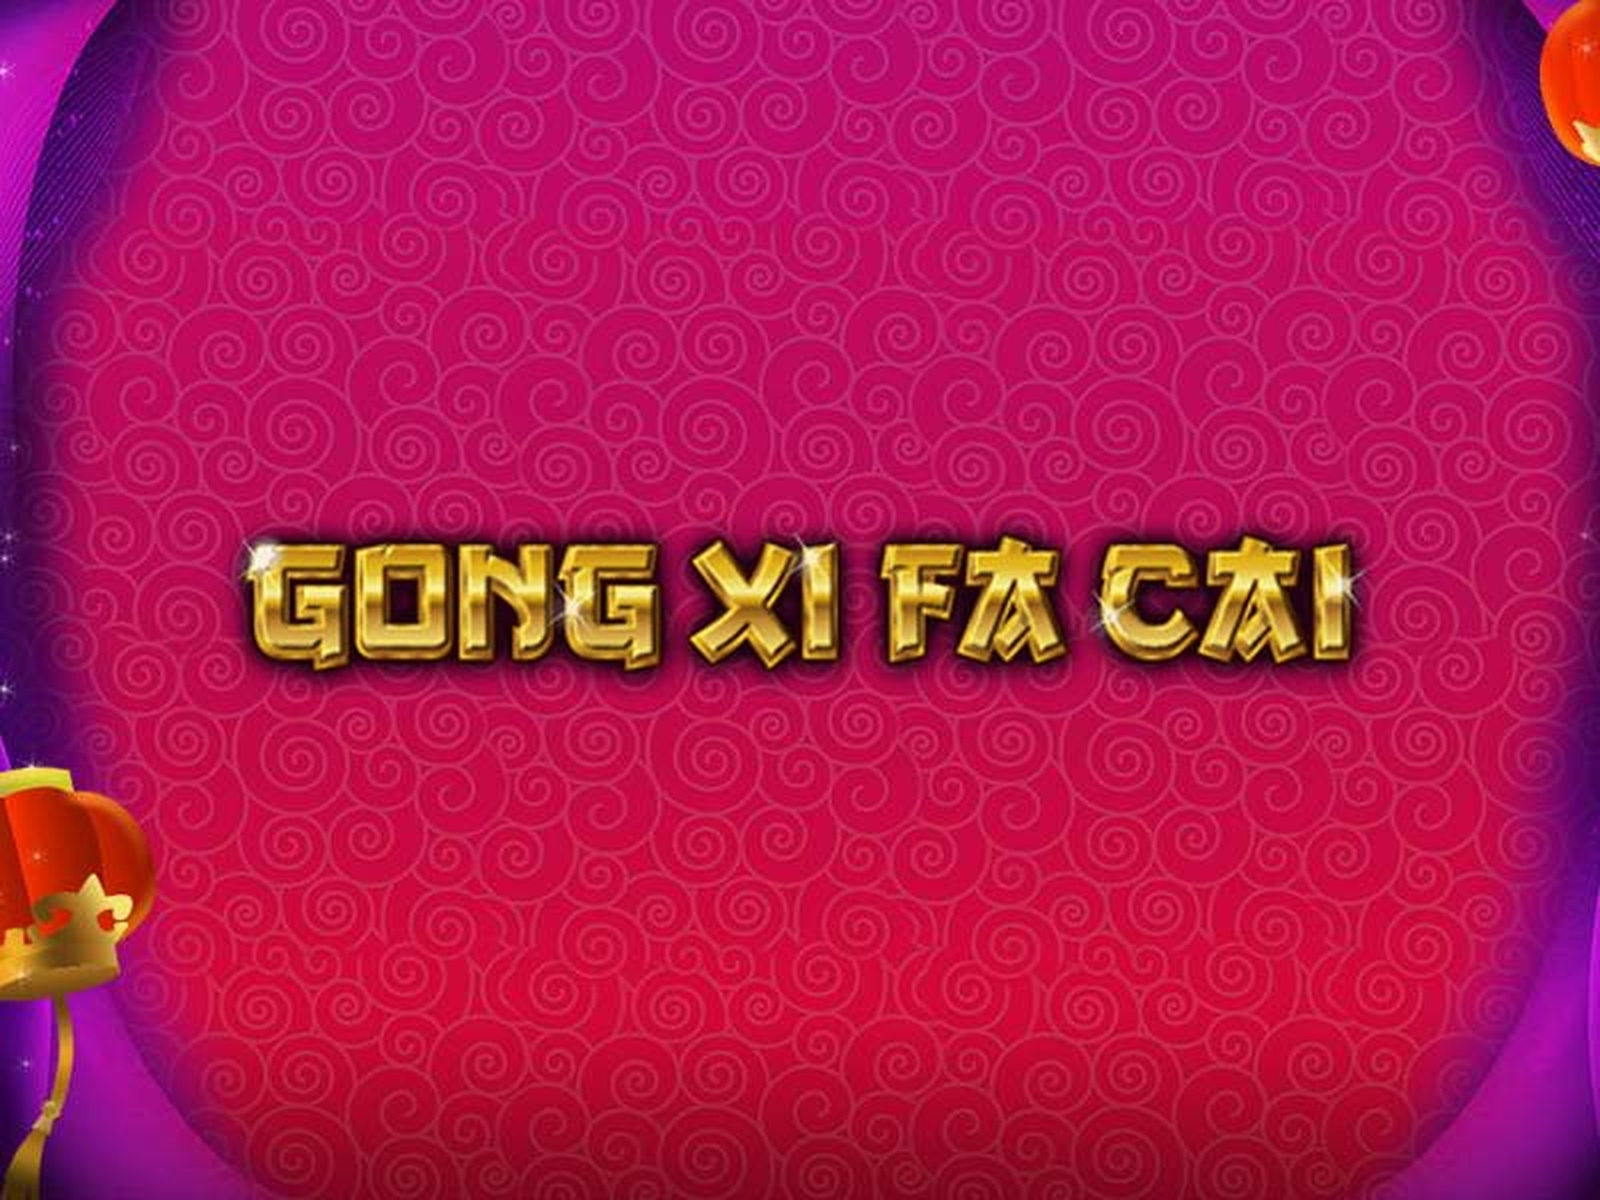 Gong Xi Fa Cai demo